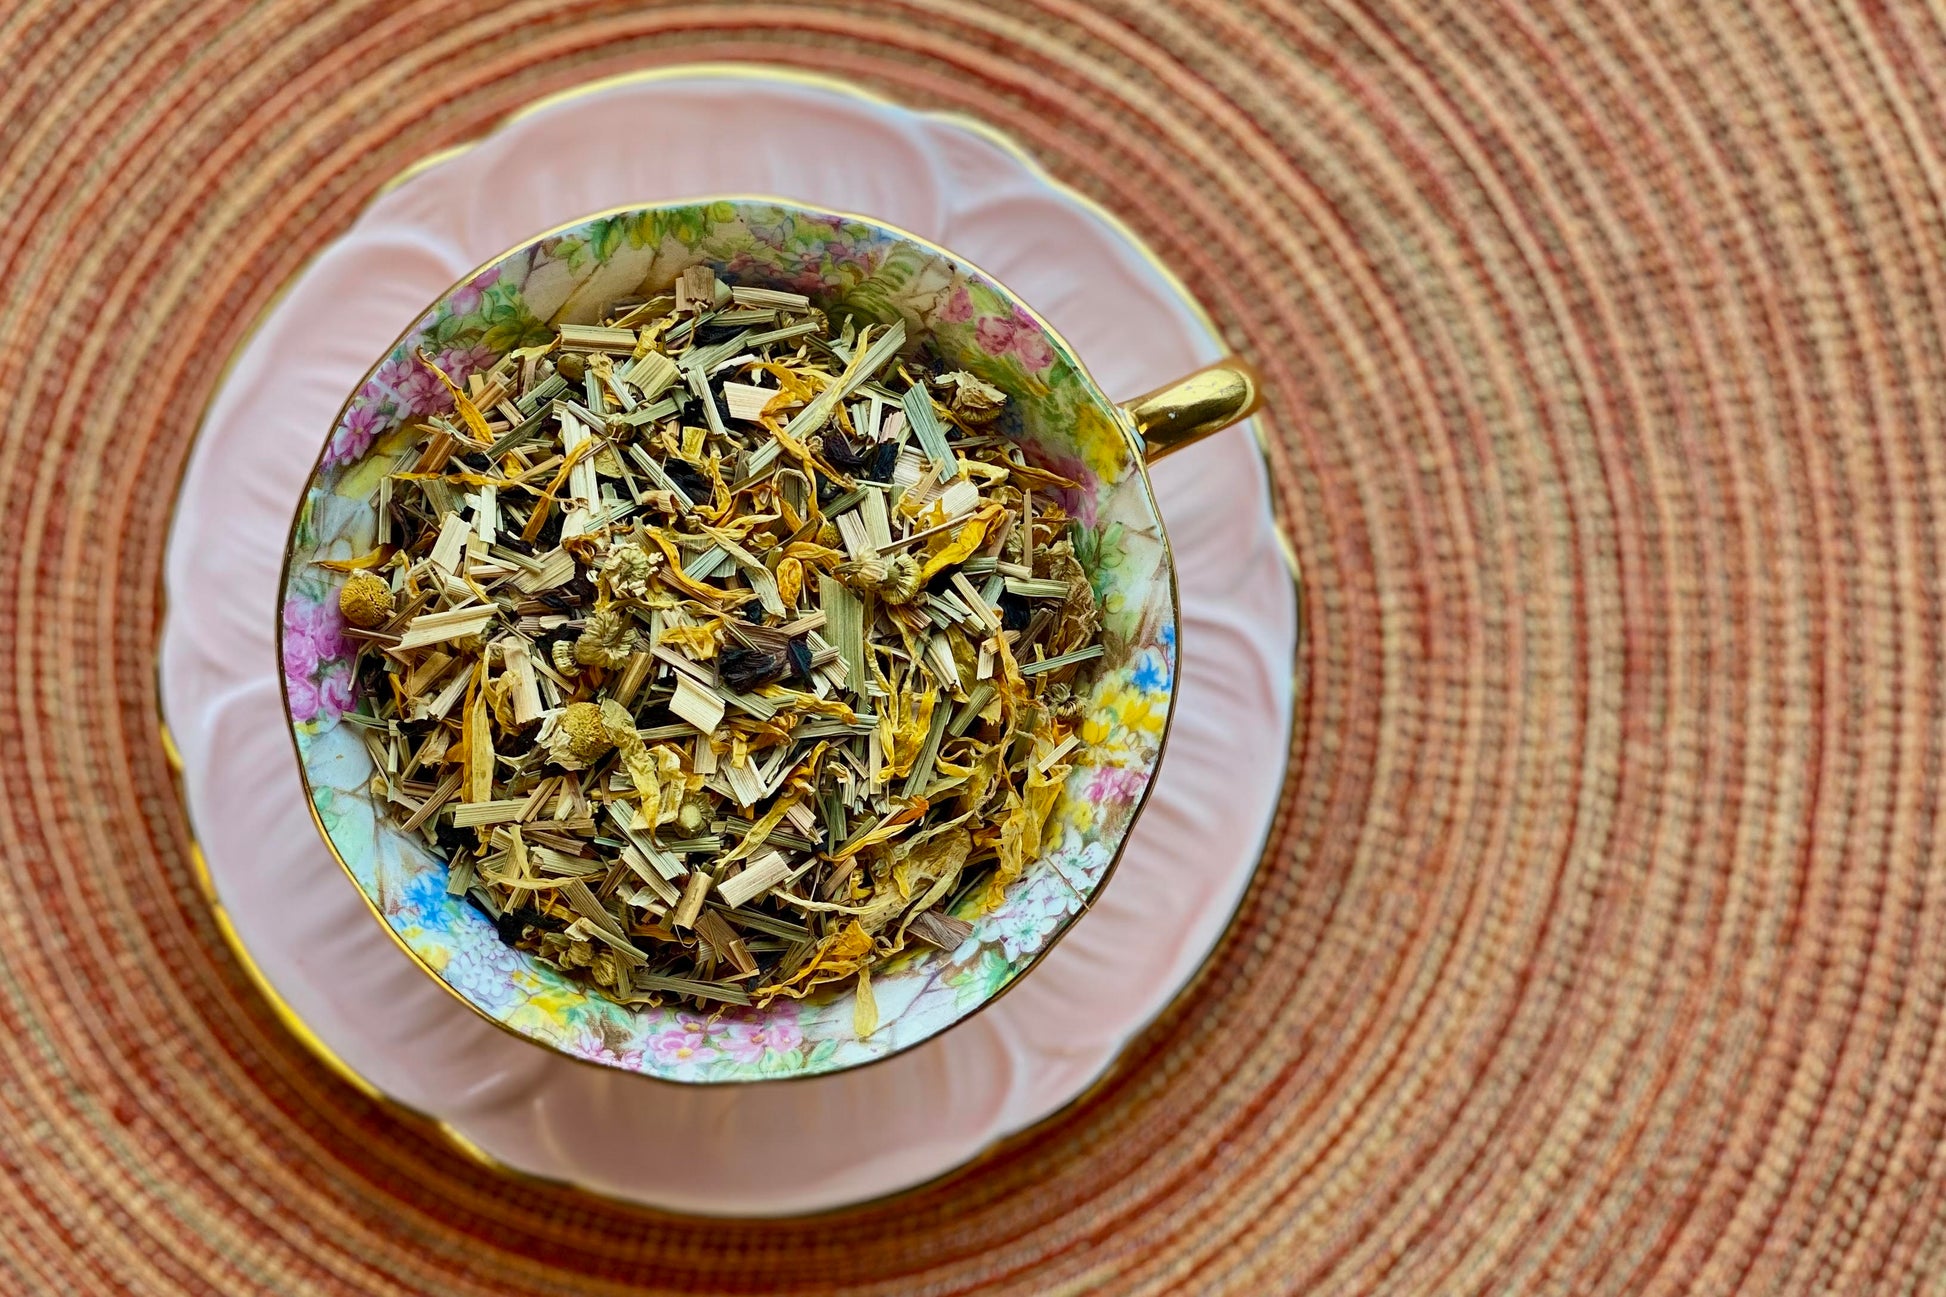 Teacup full of flowers and lemongrass